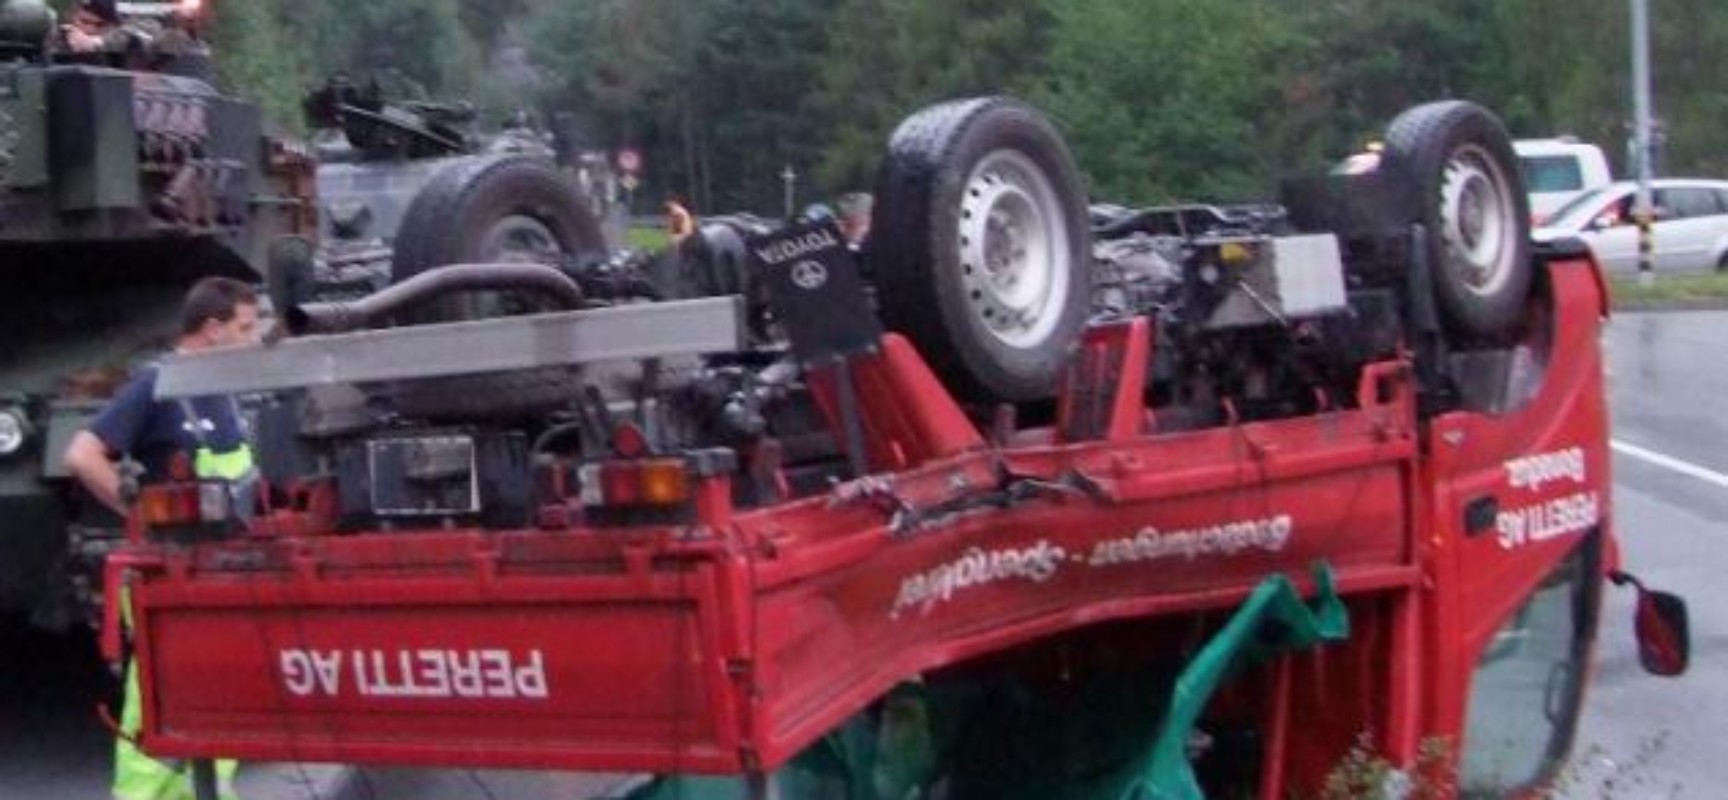 Unfall in Unterrealta bei Rothenbrunnen: Lieferwagen mit Kampfpanzer Leopard zusammengestoßen